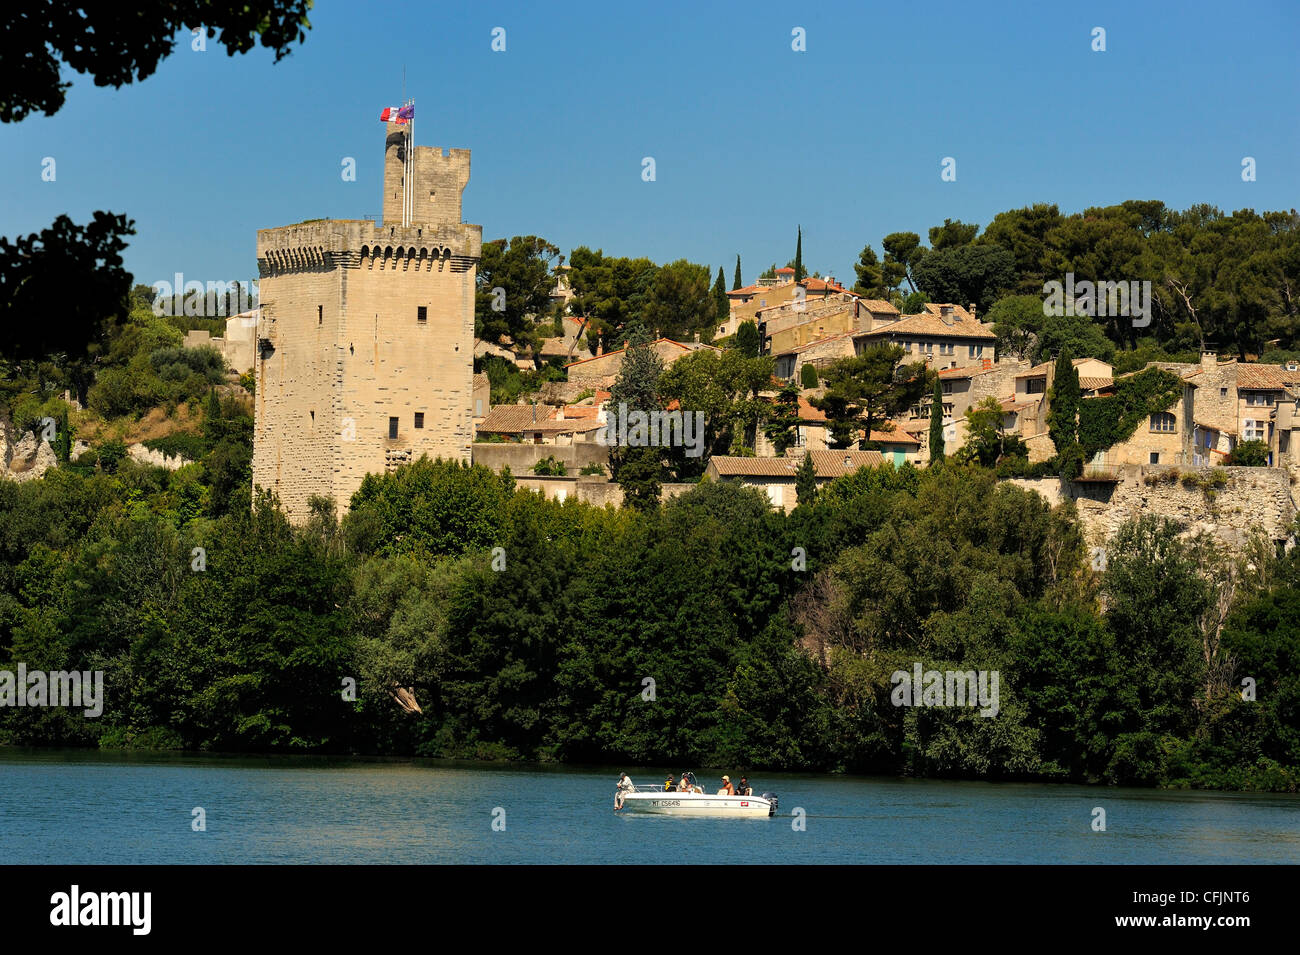 Tour Philippe Le Bel, beside the Rhone River, Villeneuve les Avignon, Avignon, Languedoc, France, Europe Stock Photo